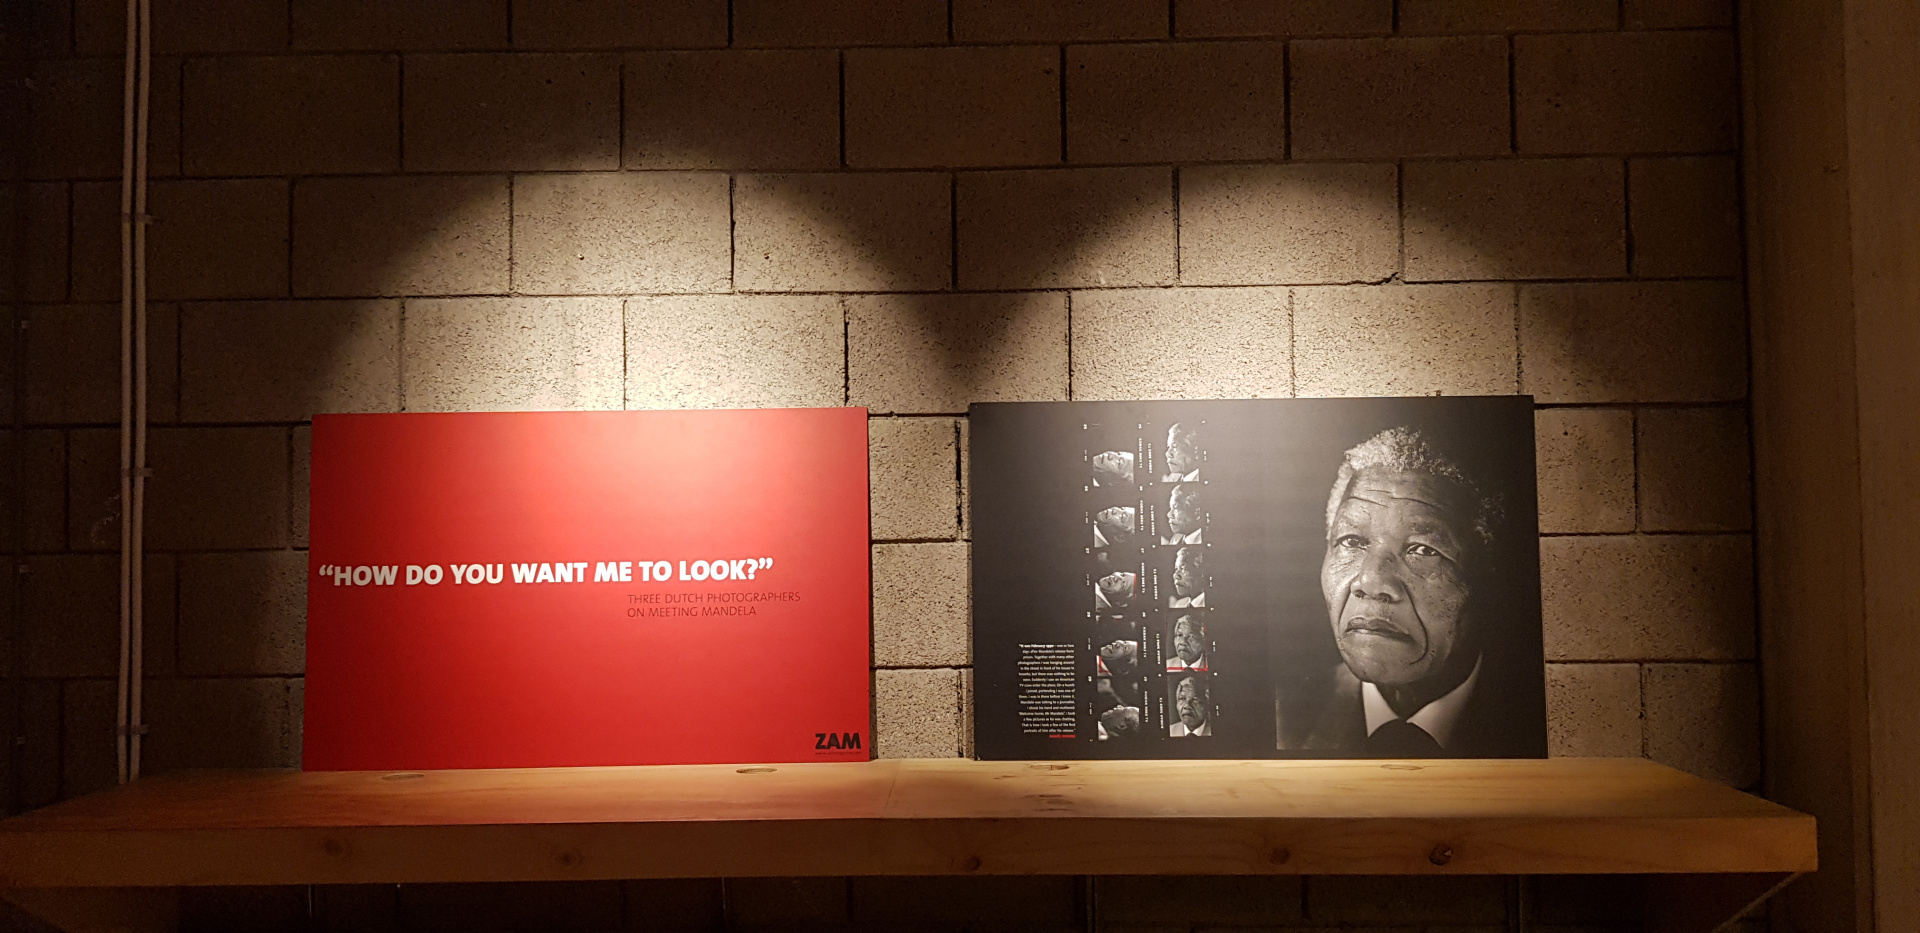 Hier zie je een m uur met 2 grote foto's die door een spotlight worden verlicht. Op de linkerfoto zie je een rood vlak met gecentreerd in het midden de tekst in witte kapitalen: 'How do you want me to look?'. Op de rechterfoto zie je aan de linkerkant 2 kolommen met kleine foto's en aan de rechterkant een grote foto van het gezicht van Nelson Mandela. 